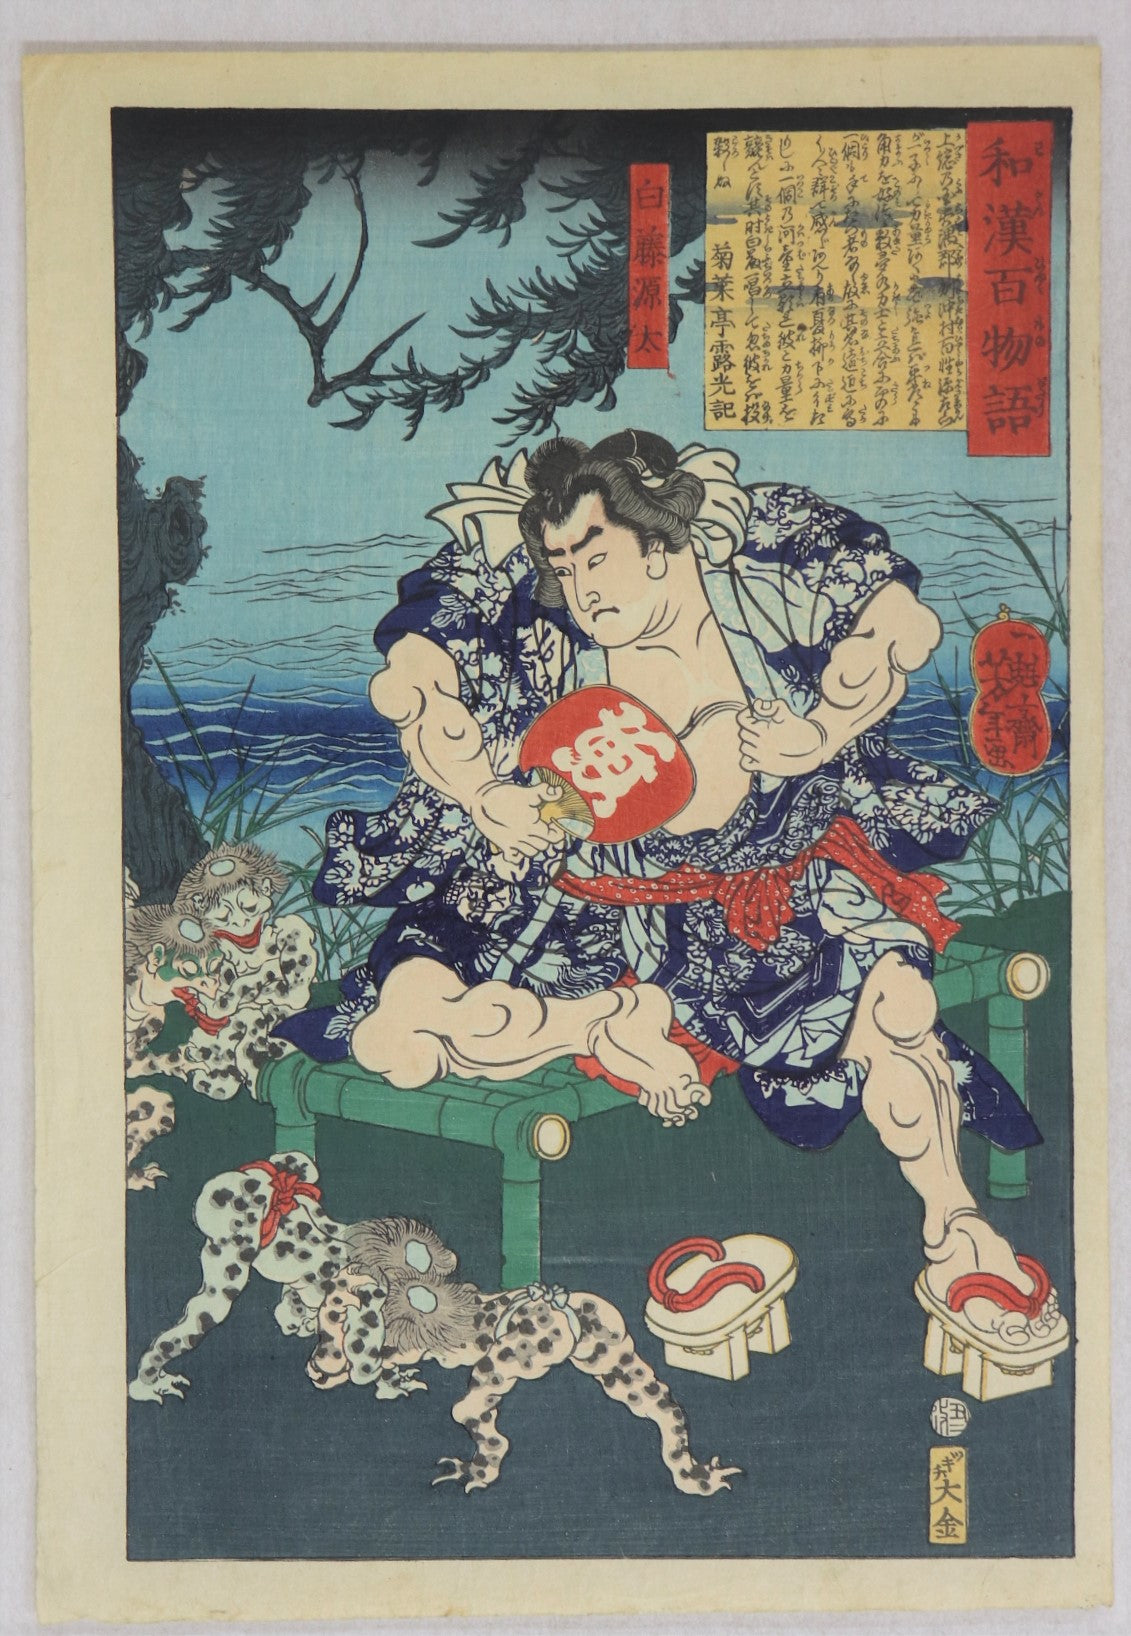 Shirafuji Genta from the series "One hundred Tales of Japan and China" by Yoshitoshi  / Shirafuji Genta de la série " Cent contes du Japon et de Chine" par Yoshitoshi (1865)